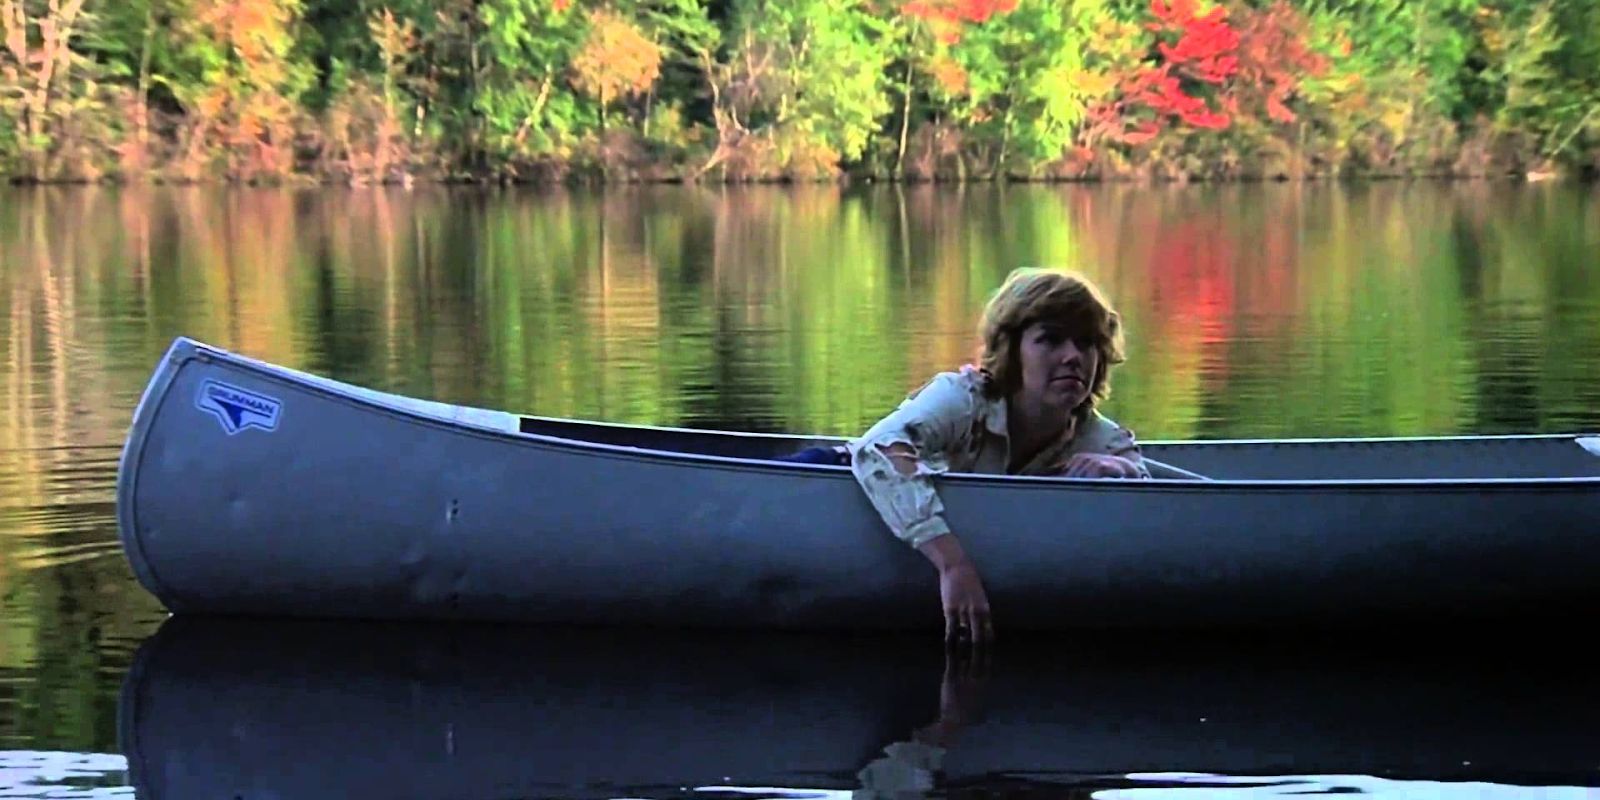 Movies Friday the 13th canoe